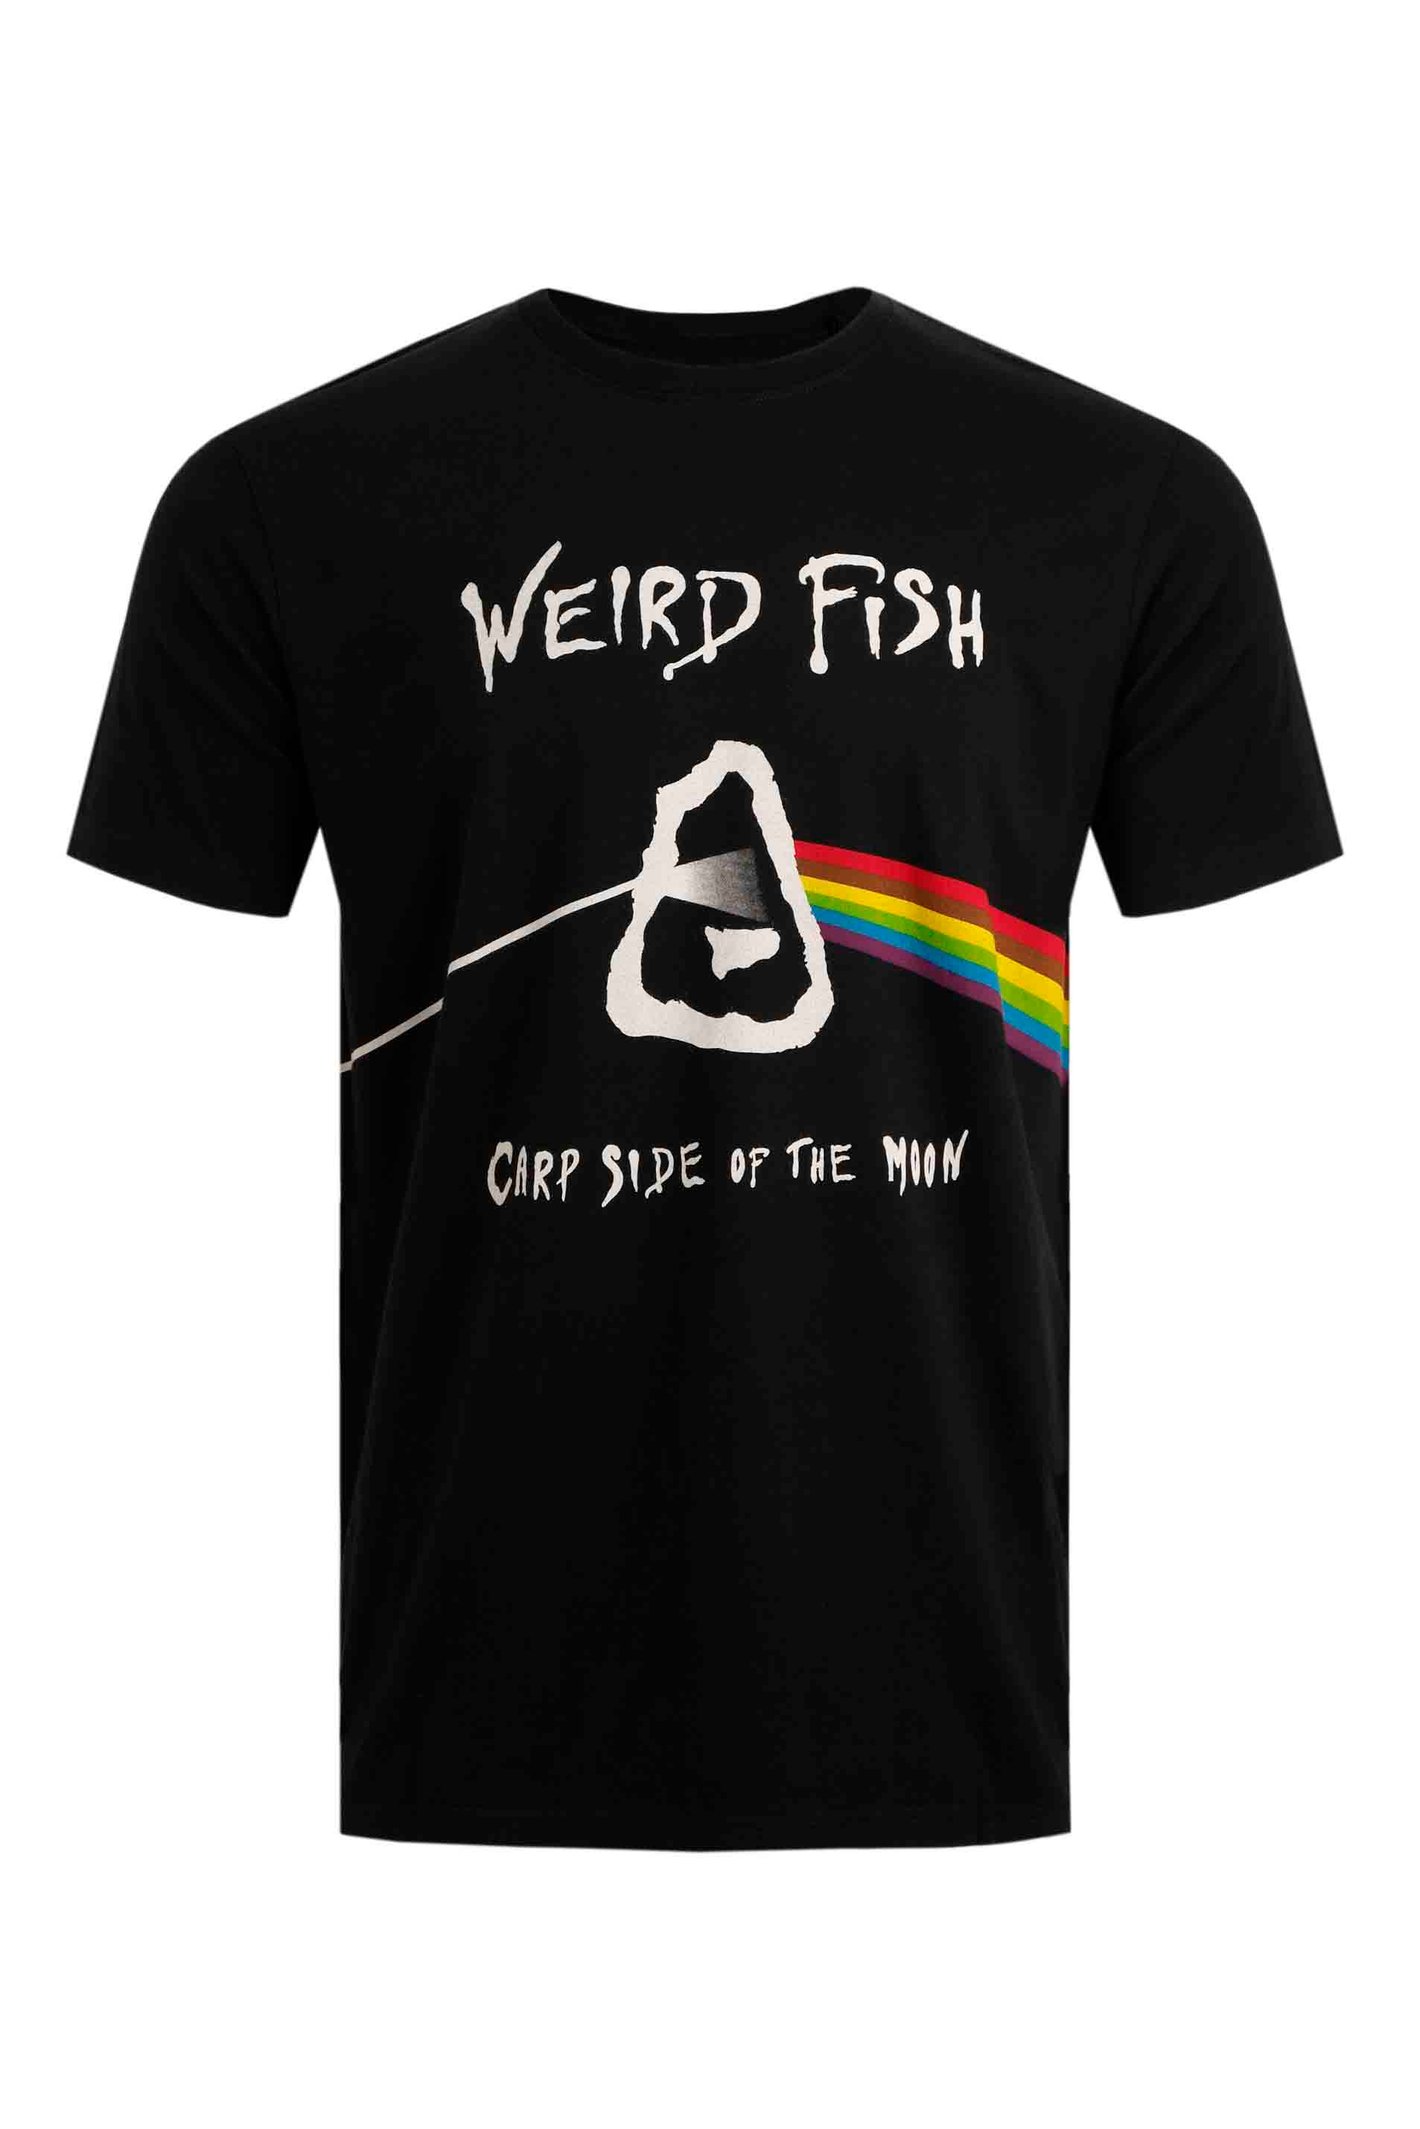 Weird Fish Carp Side Artist T-Shirt Black Size M